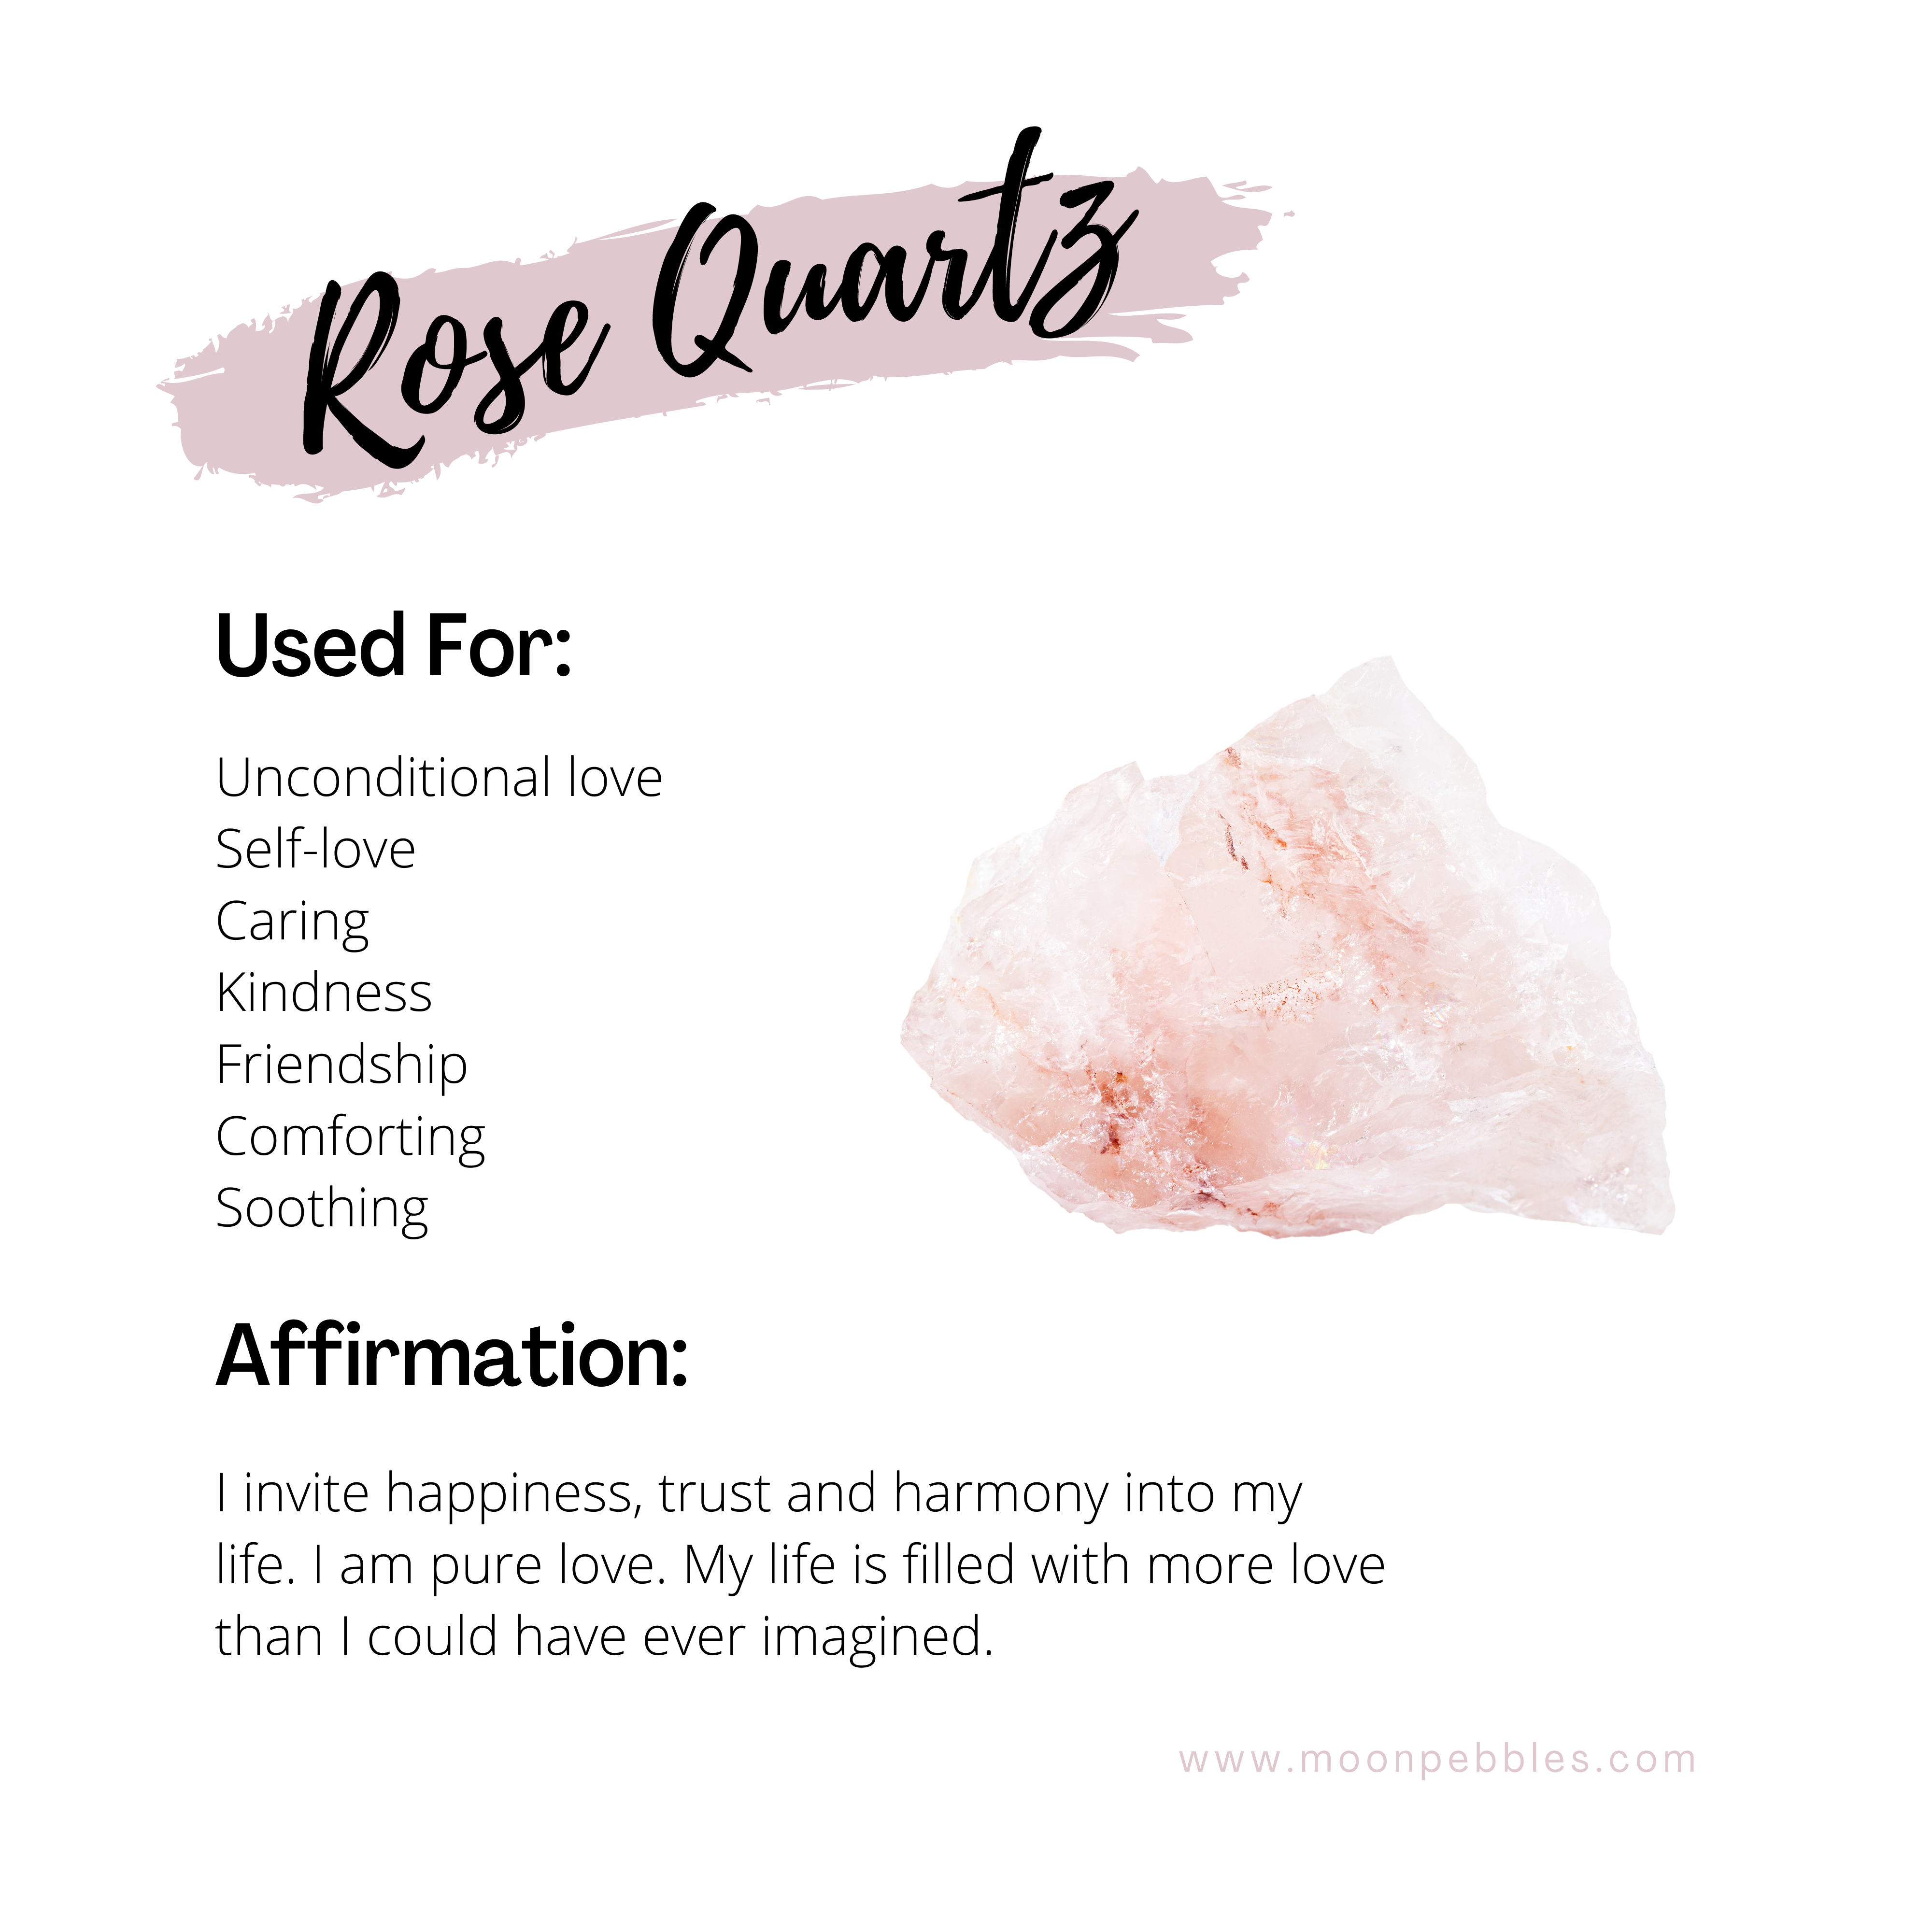 Rose Quartz Healing Properties, Rose Quartz Meaning, Benefits Of Rose  Quartz, Metaphysical Properties Of Rose Quartz